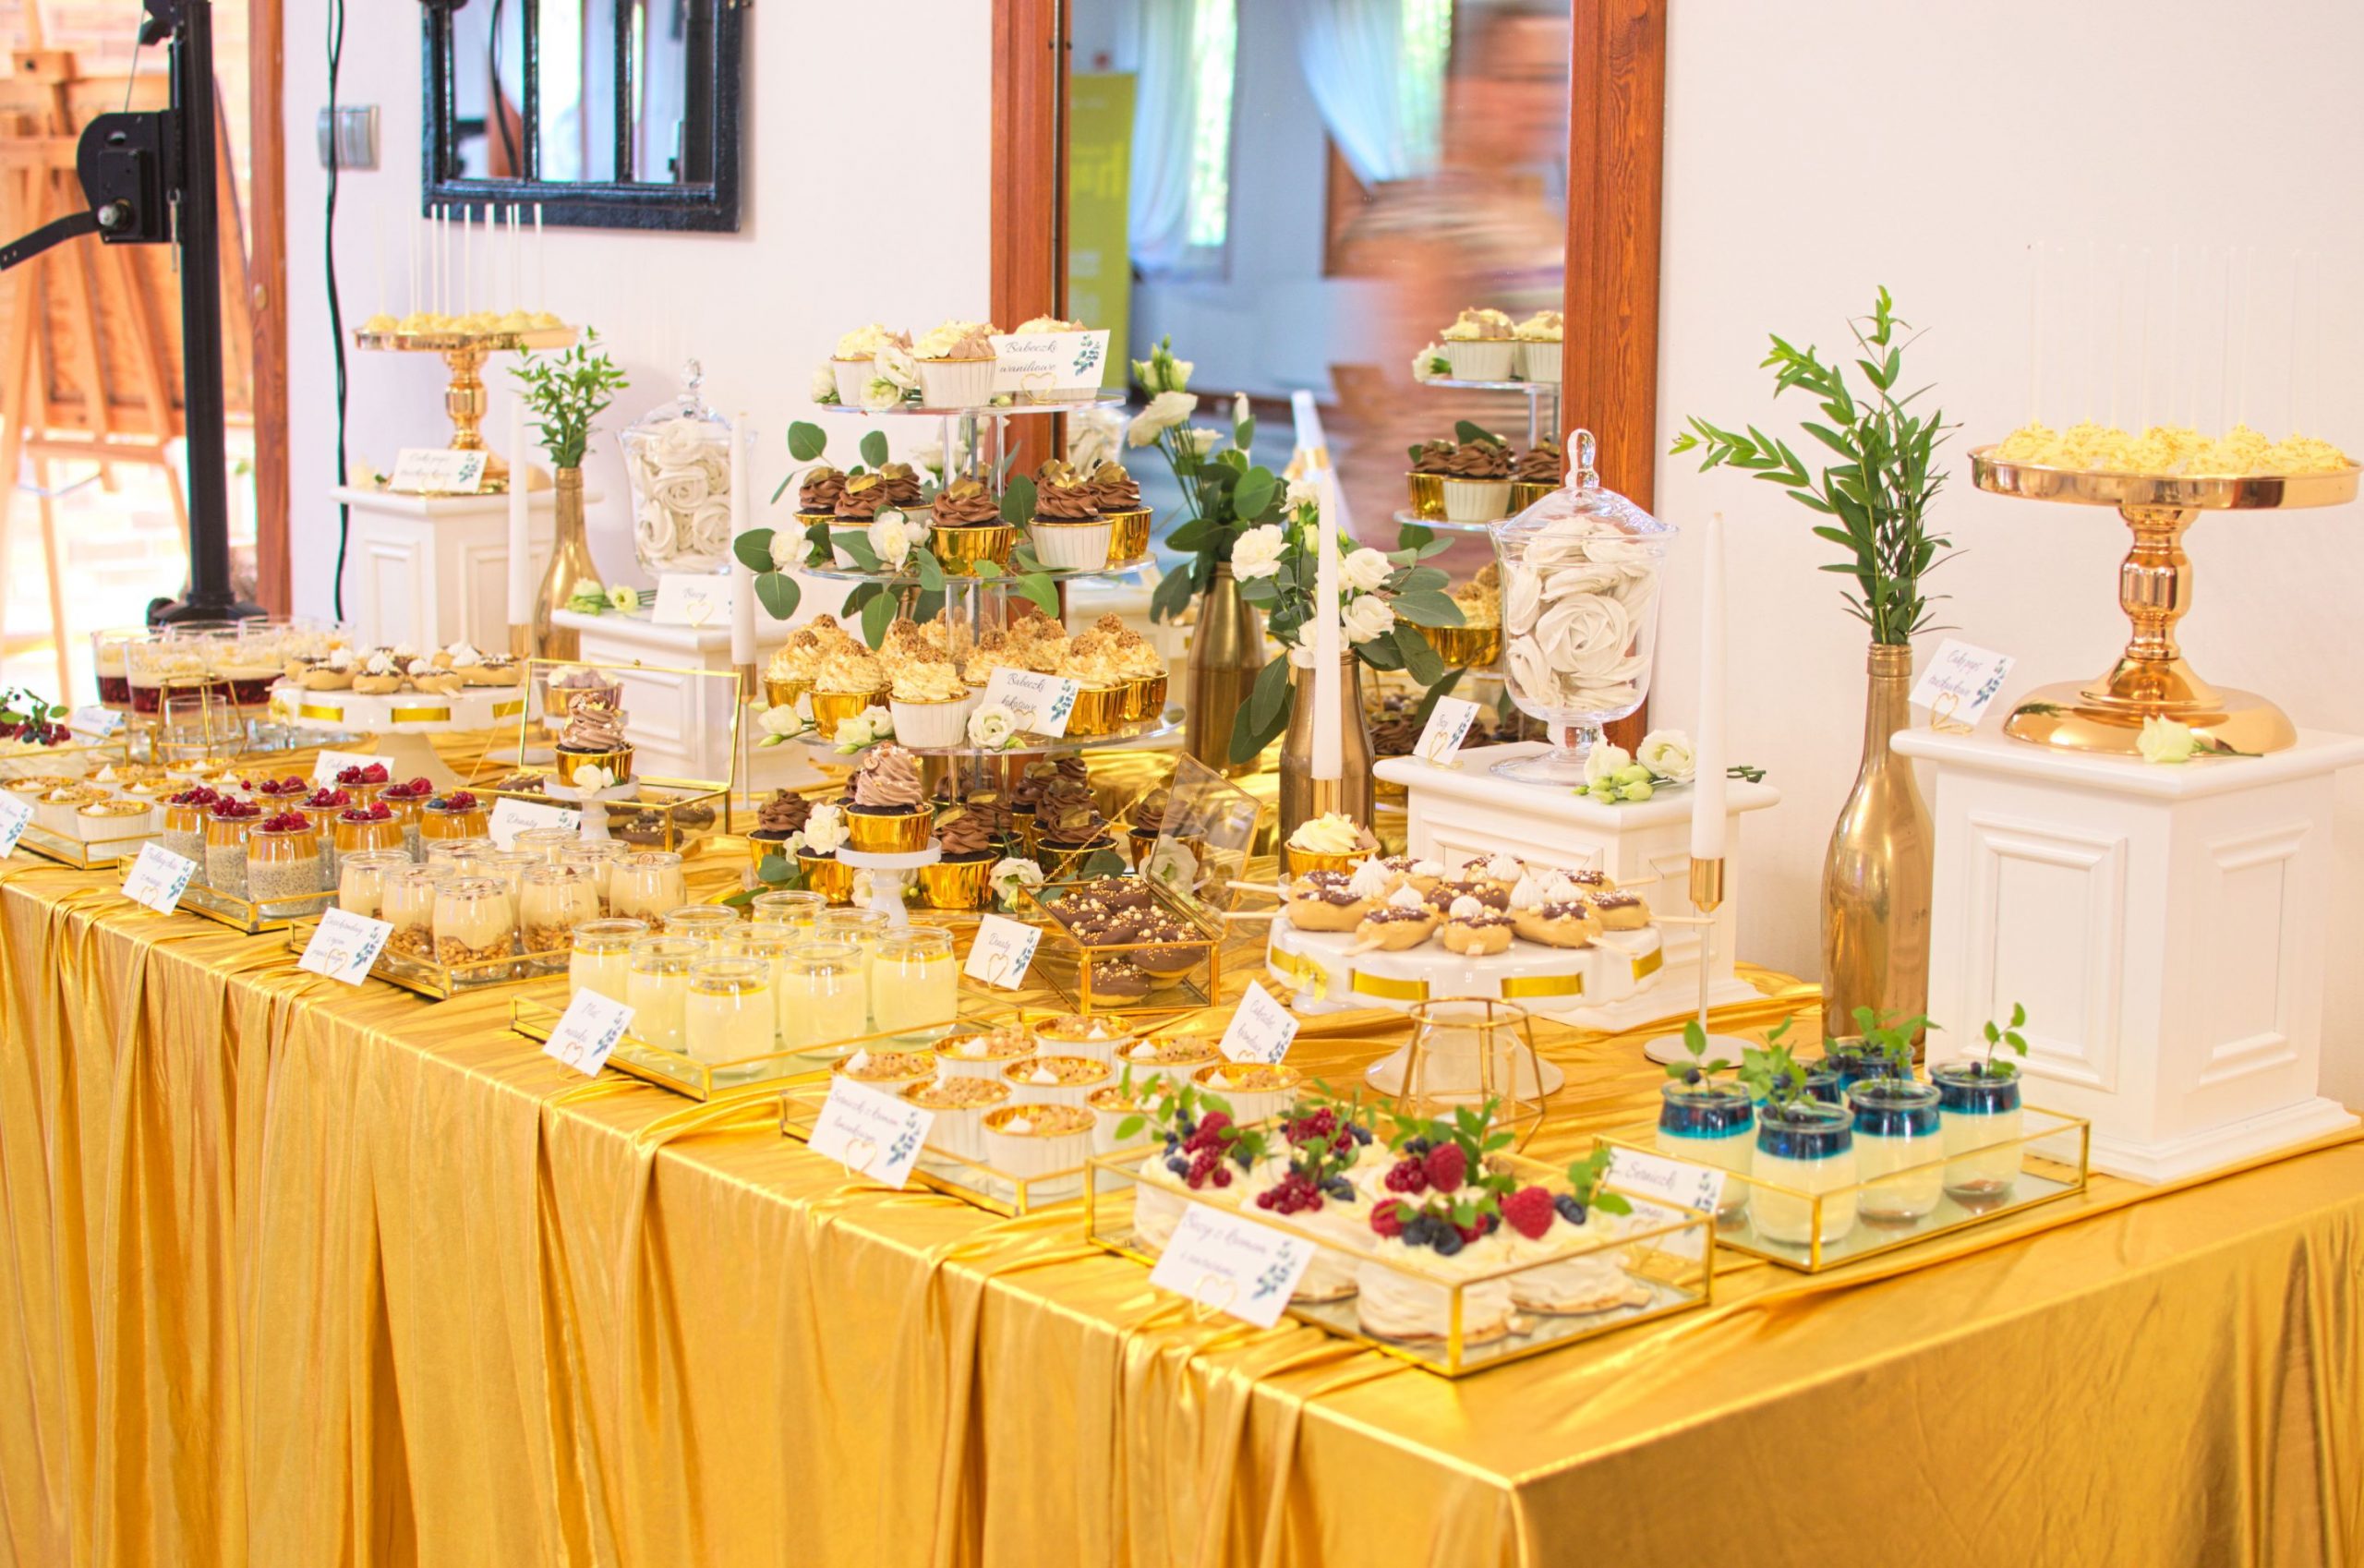 Słodki stół przygotowany na wesele Karoliny i Krystiana